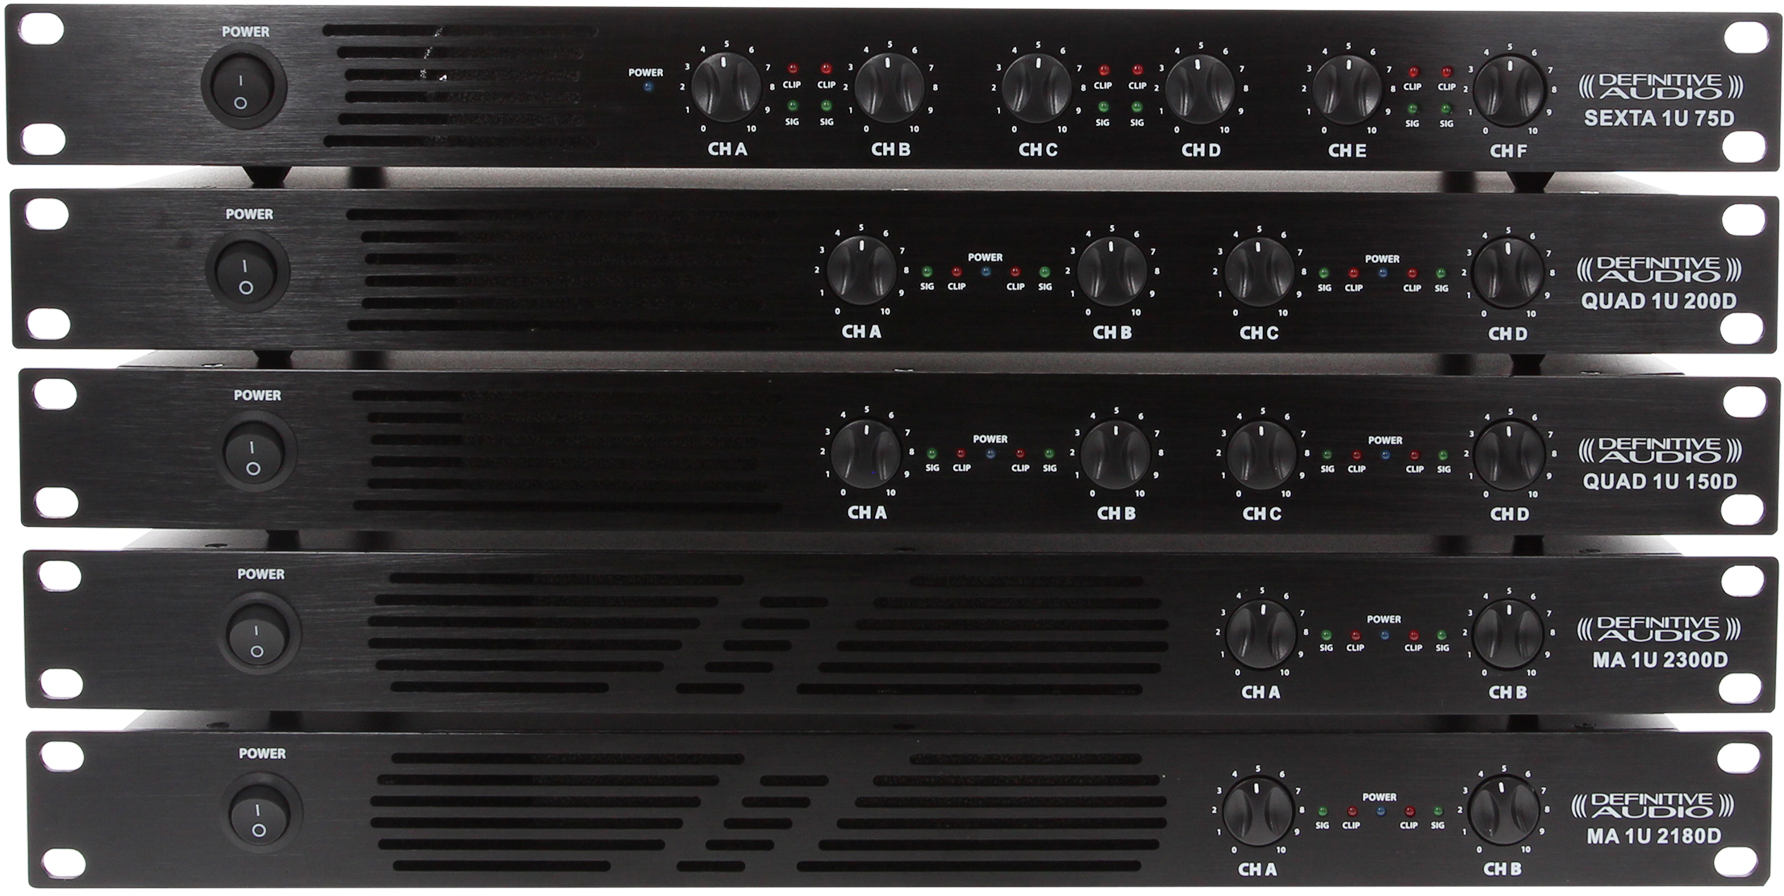 Definitive Audio Quad 1u 150d - Etapa final de potencia de varios canales - Variation 5